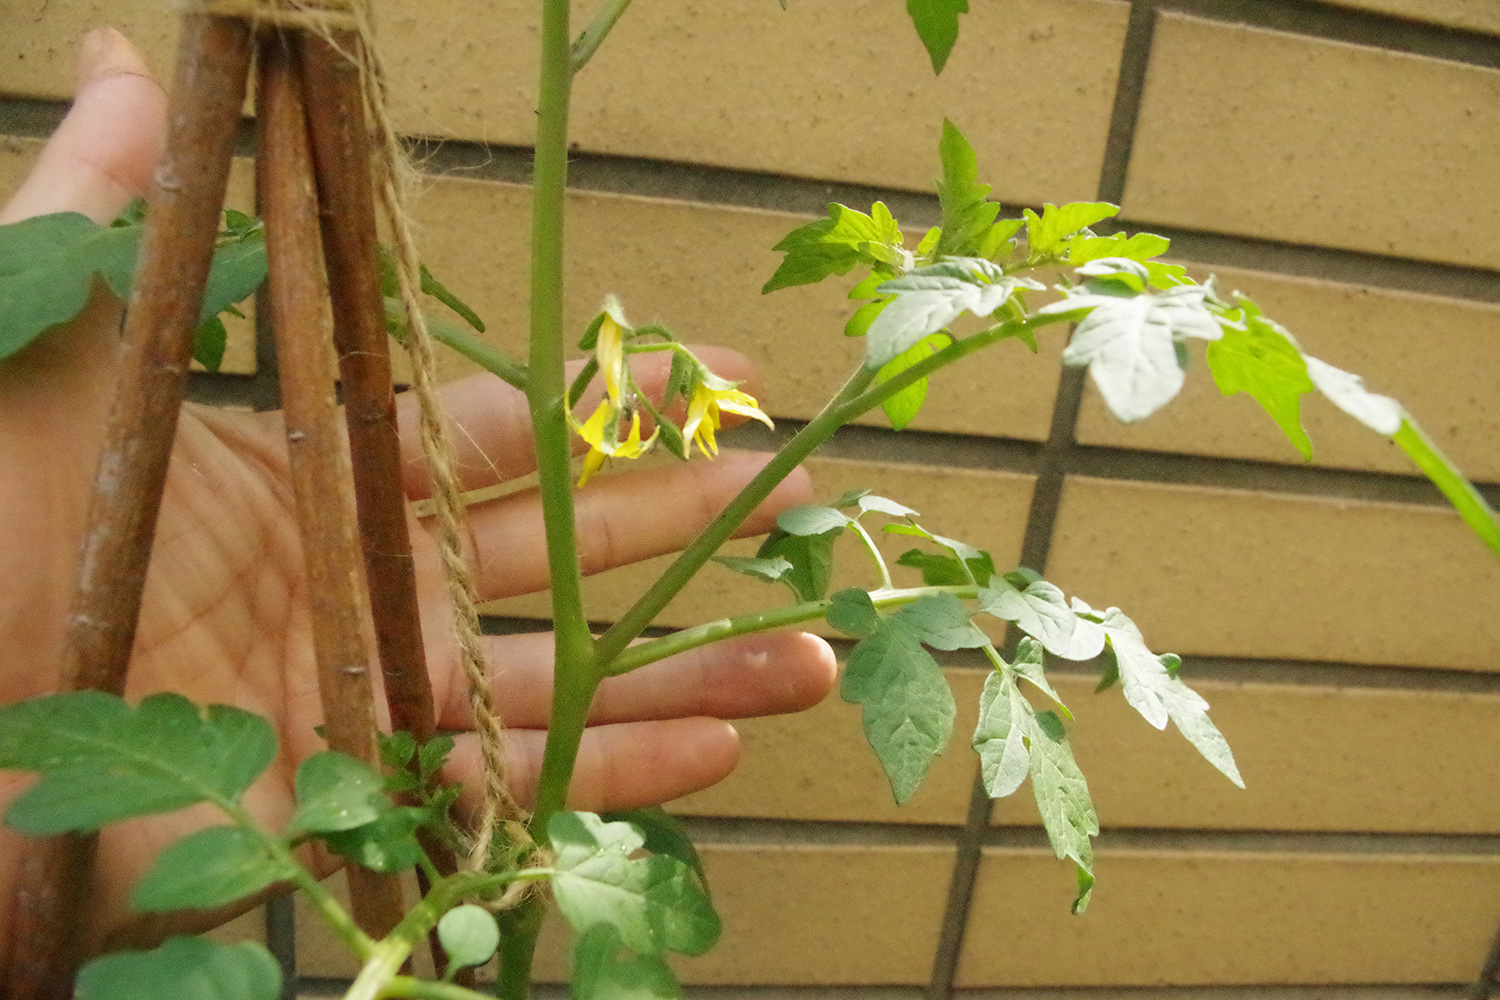 トマトや葉野菜 ベランダ菜園を 害虫から守る方法 と 脇芽かき のやり方 Be Pal